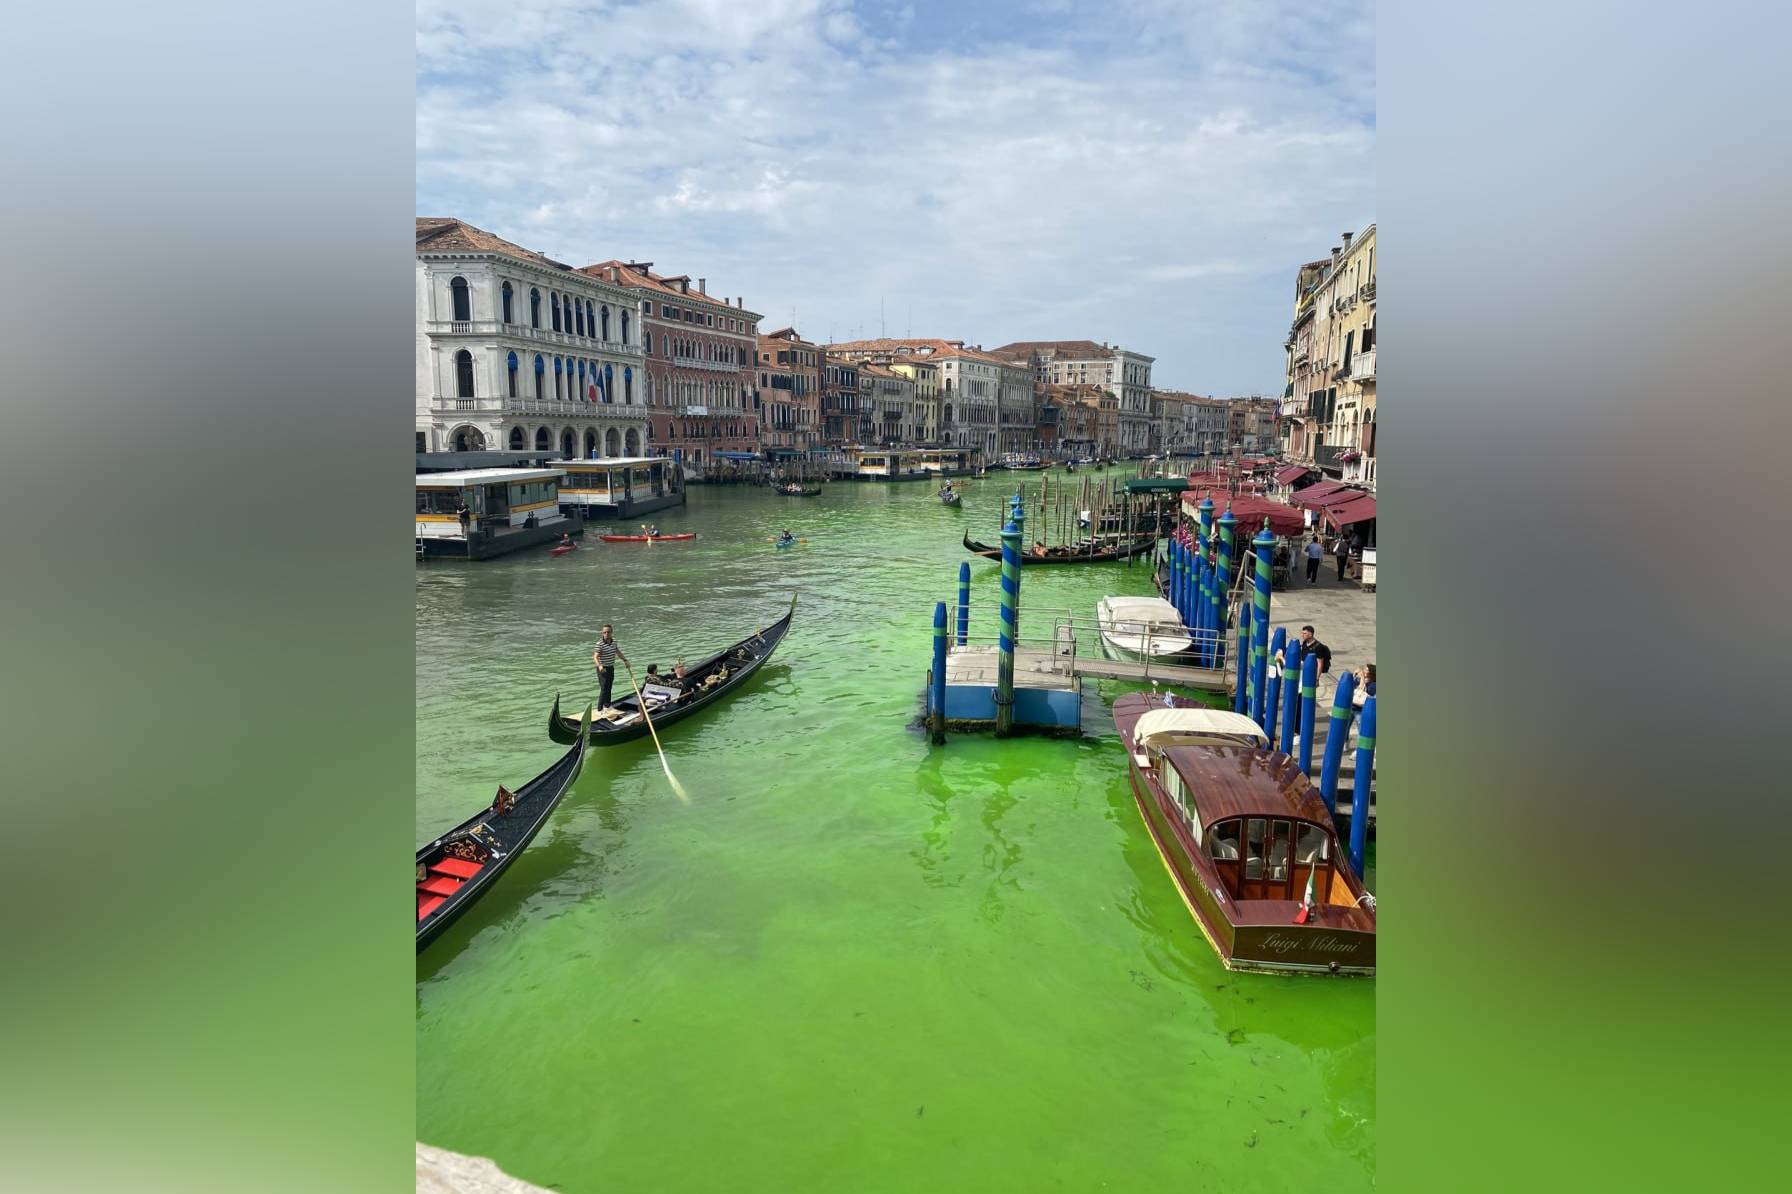 Вода Большого канала в Венеции стала ярко-зелёного цвета